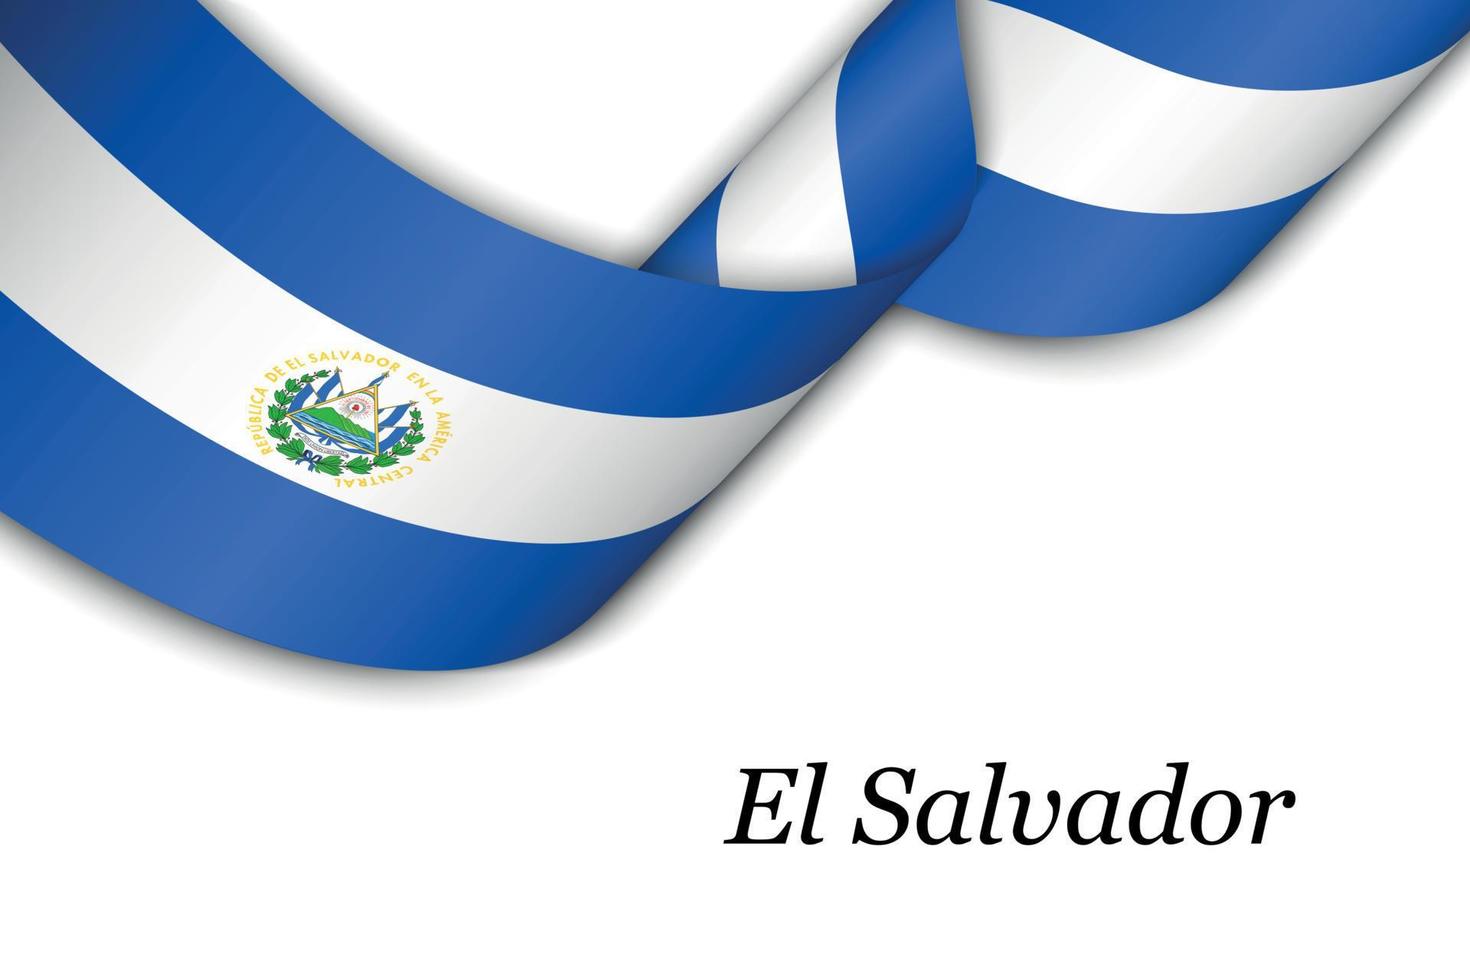 zwaaiend lint of spandoek met vlag van el salvador vector